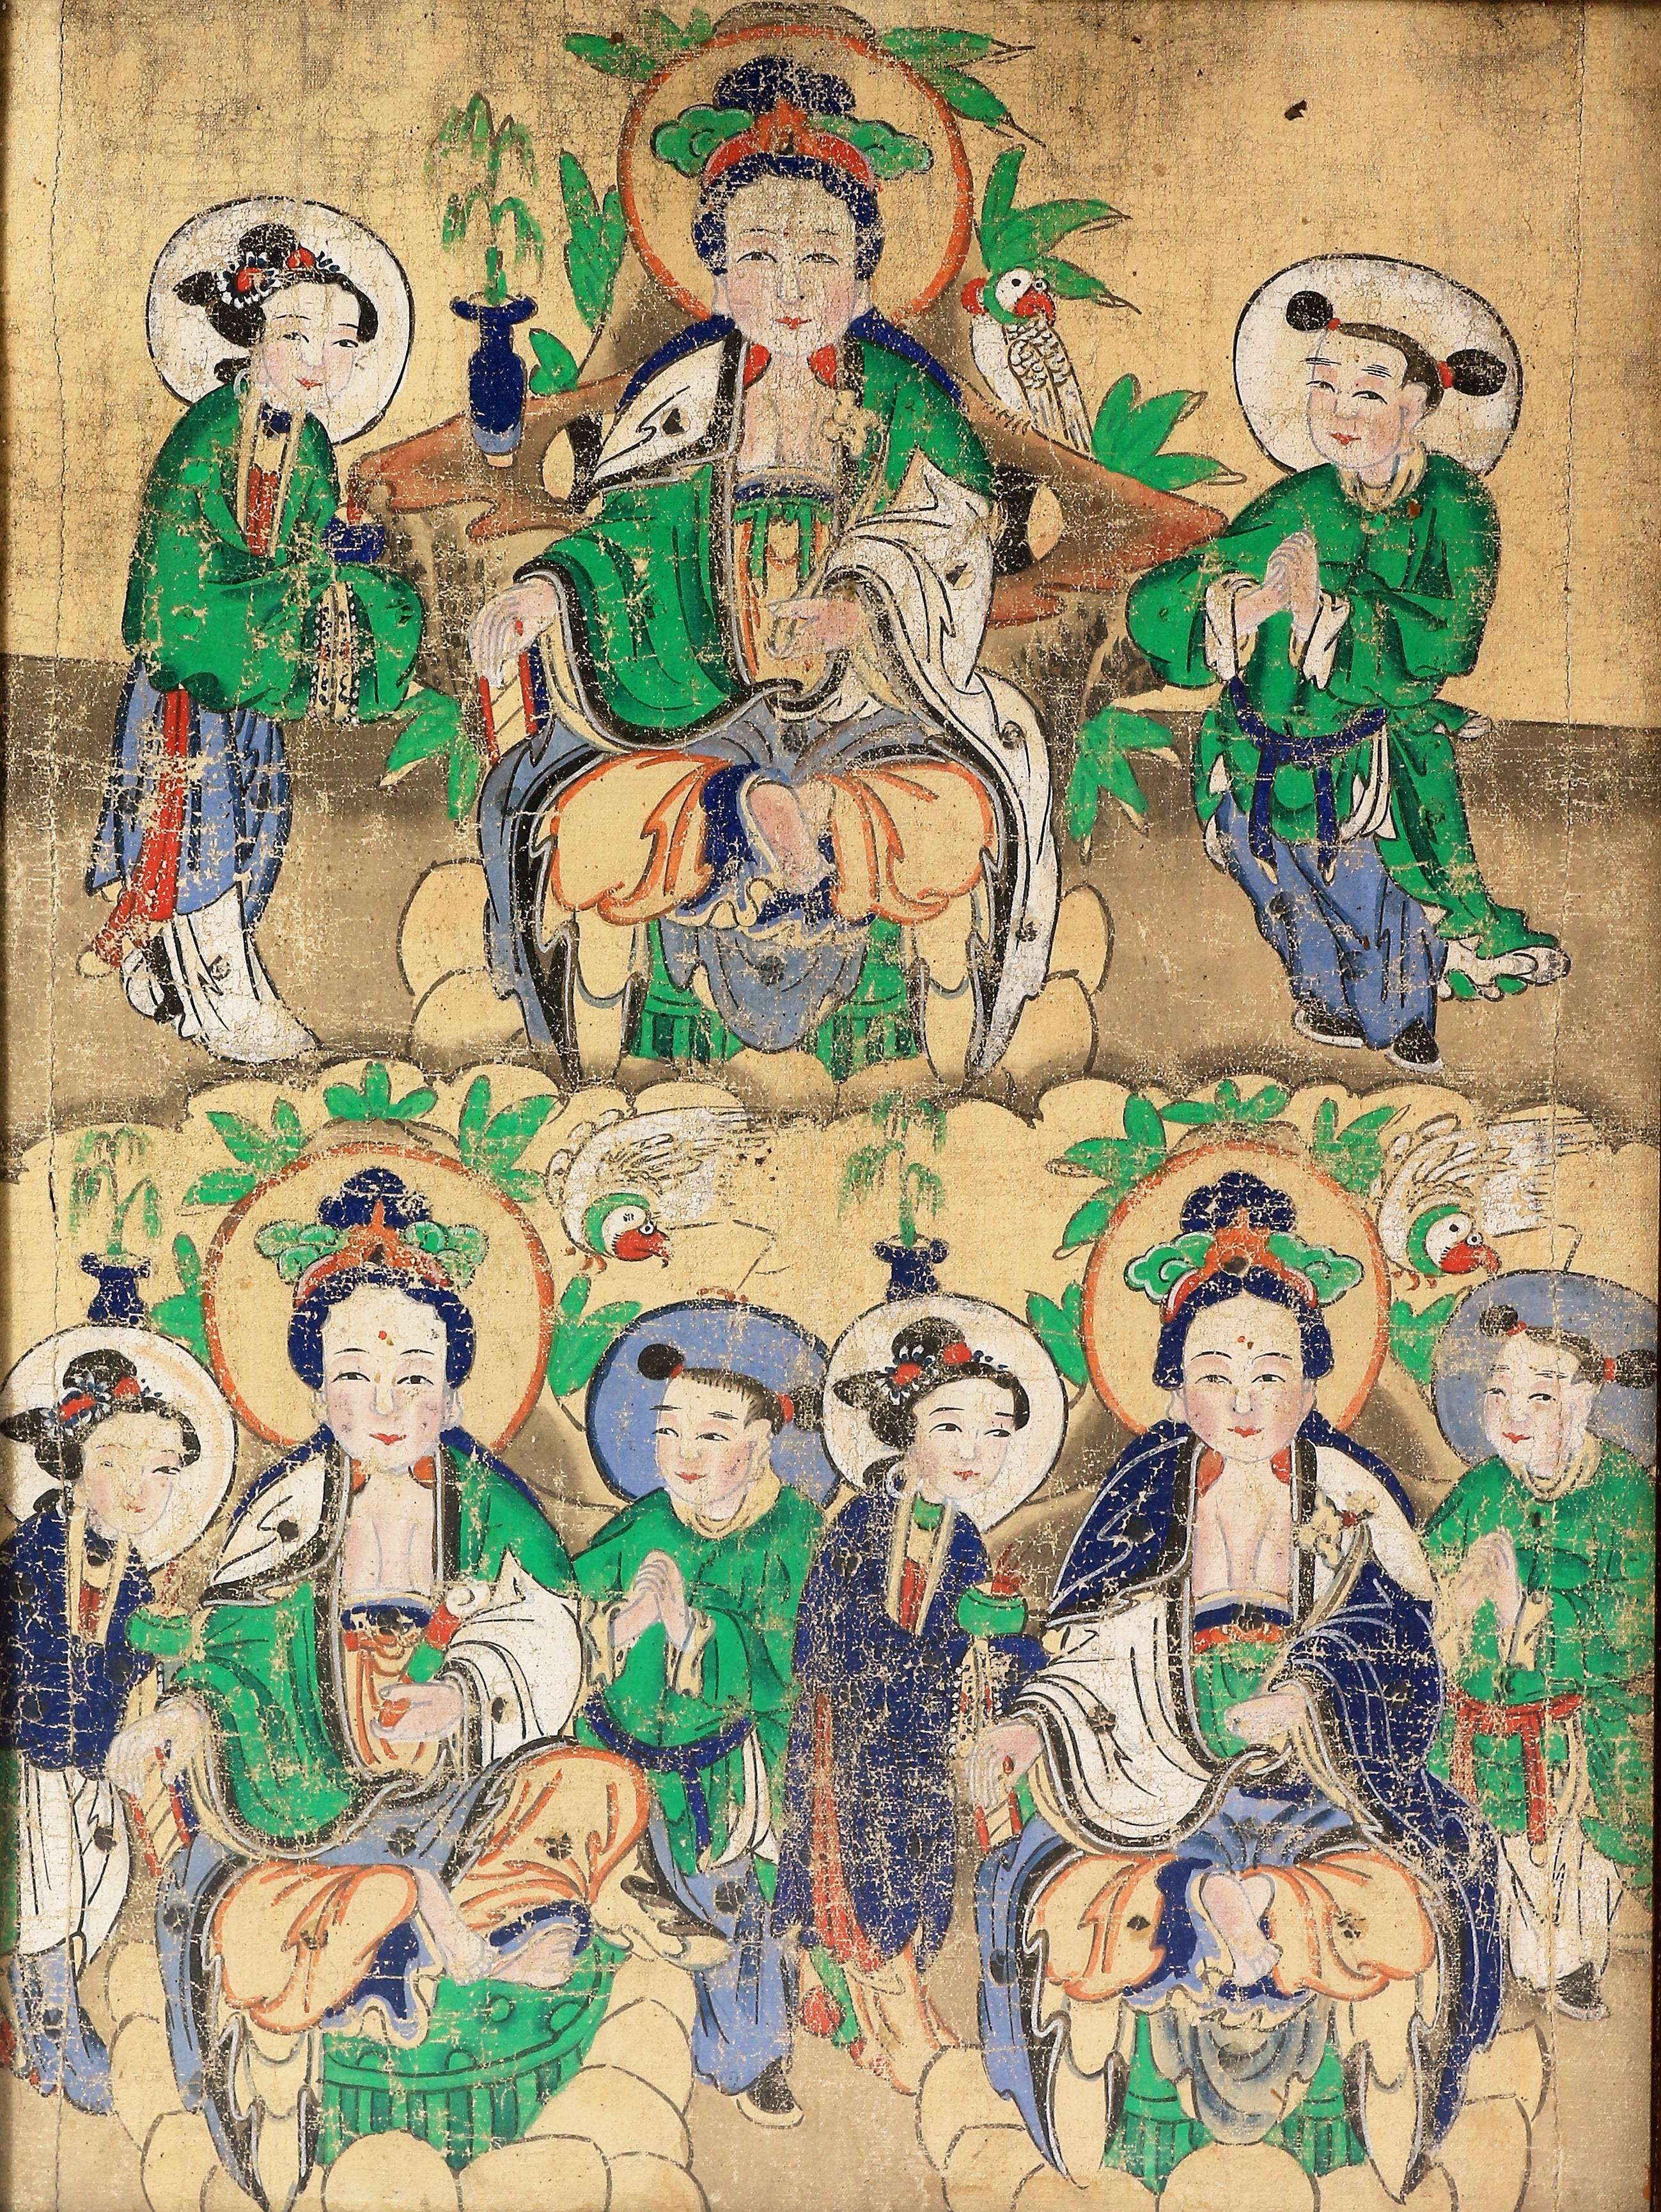 Chinesisches Gemälde, das He Xiangu darstellt, dreimal reproduziert, aber mit einem anderen Attribut: oben eine Lotusblume, unten links eine Fliegenjagd und unten rechts wieder die Lotusblume, jedes Mal umgeben von einem Schüler, der rechts betet,